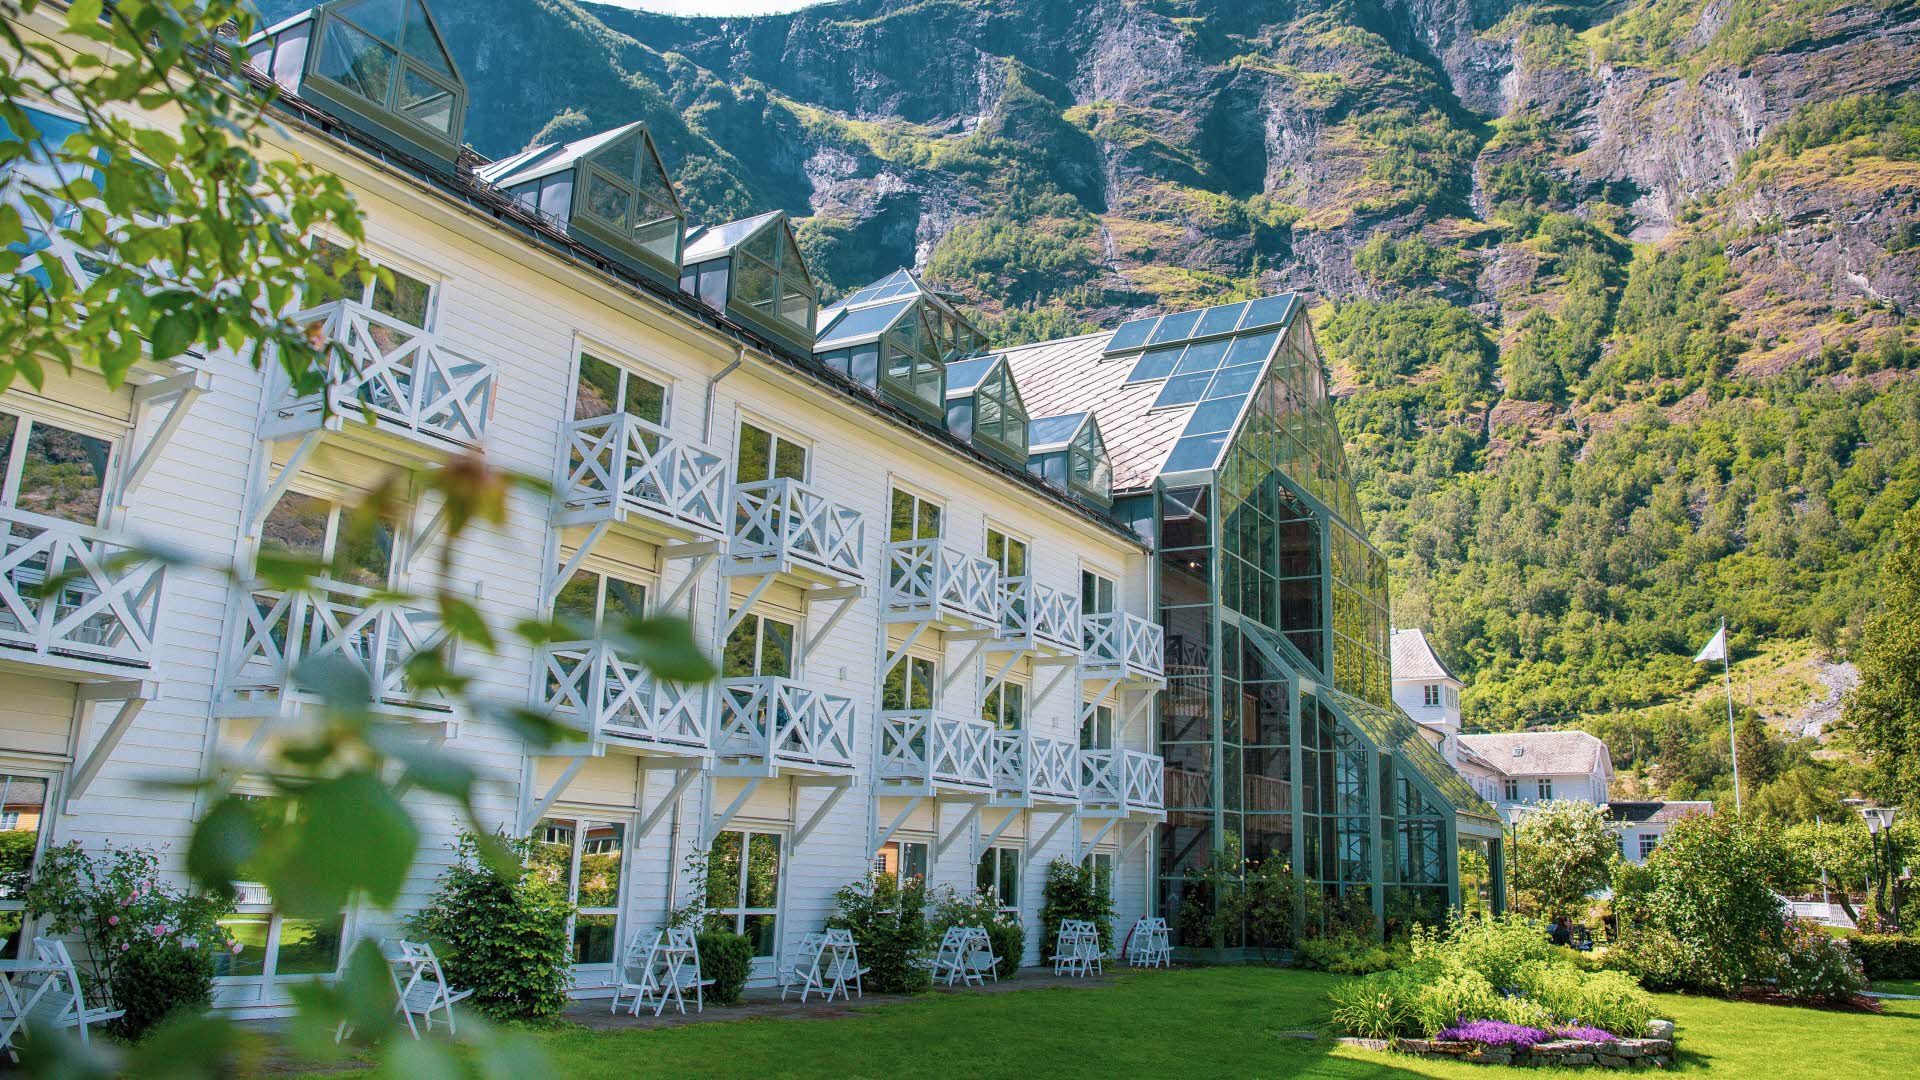 Le Fretheim Hotel vu du jardin en été, avec des feuilles en avant-plan et des montagnes escarpées en arrière-plan